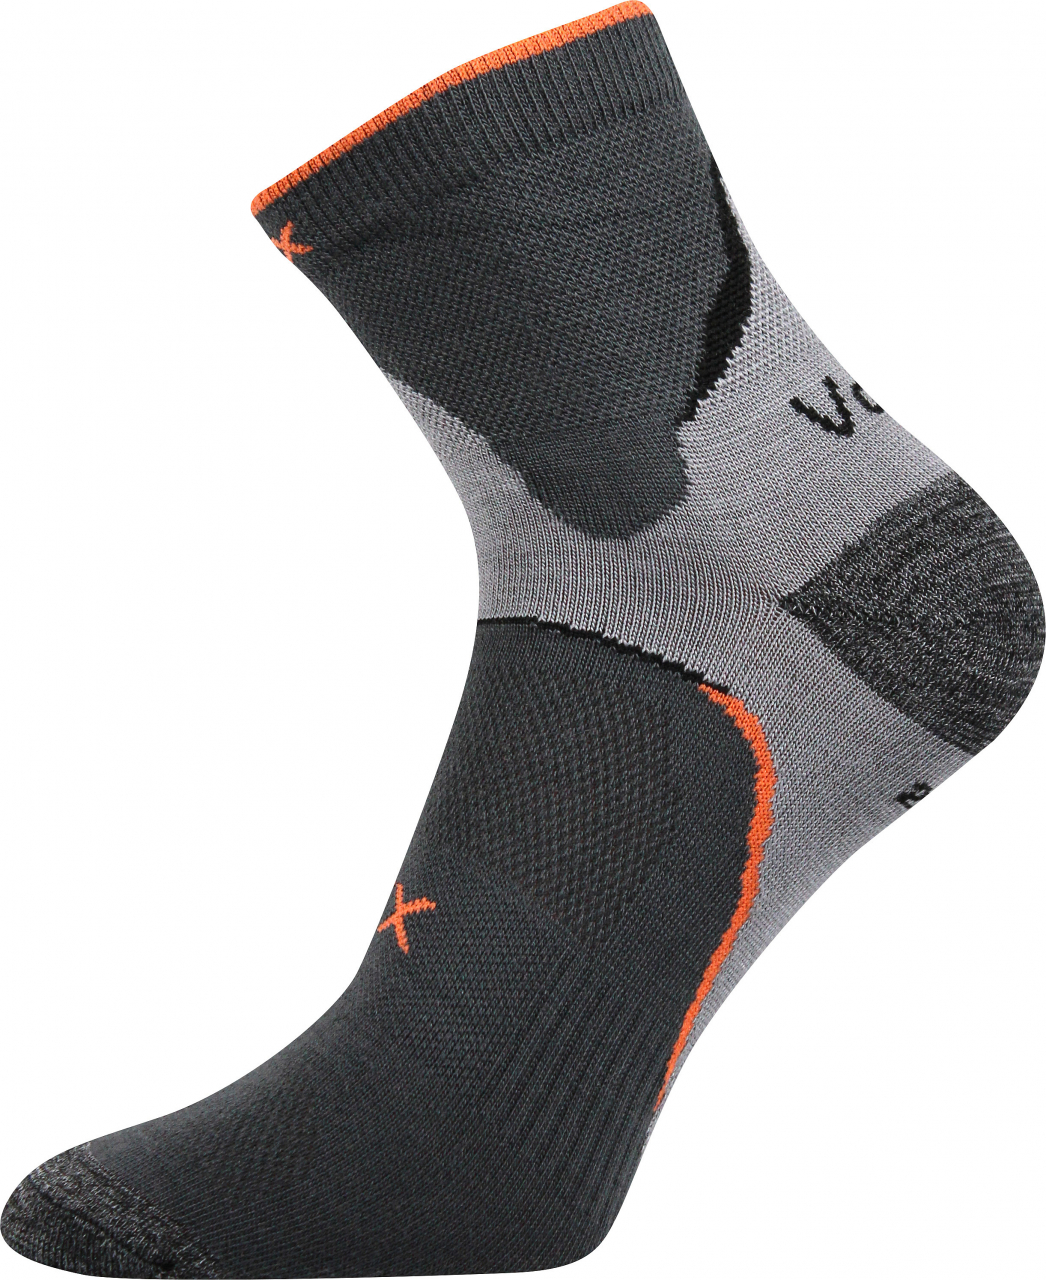 Ponožky antibakteriální Voxx Maxter silproX - tmavě šedé, 43-46